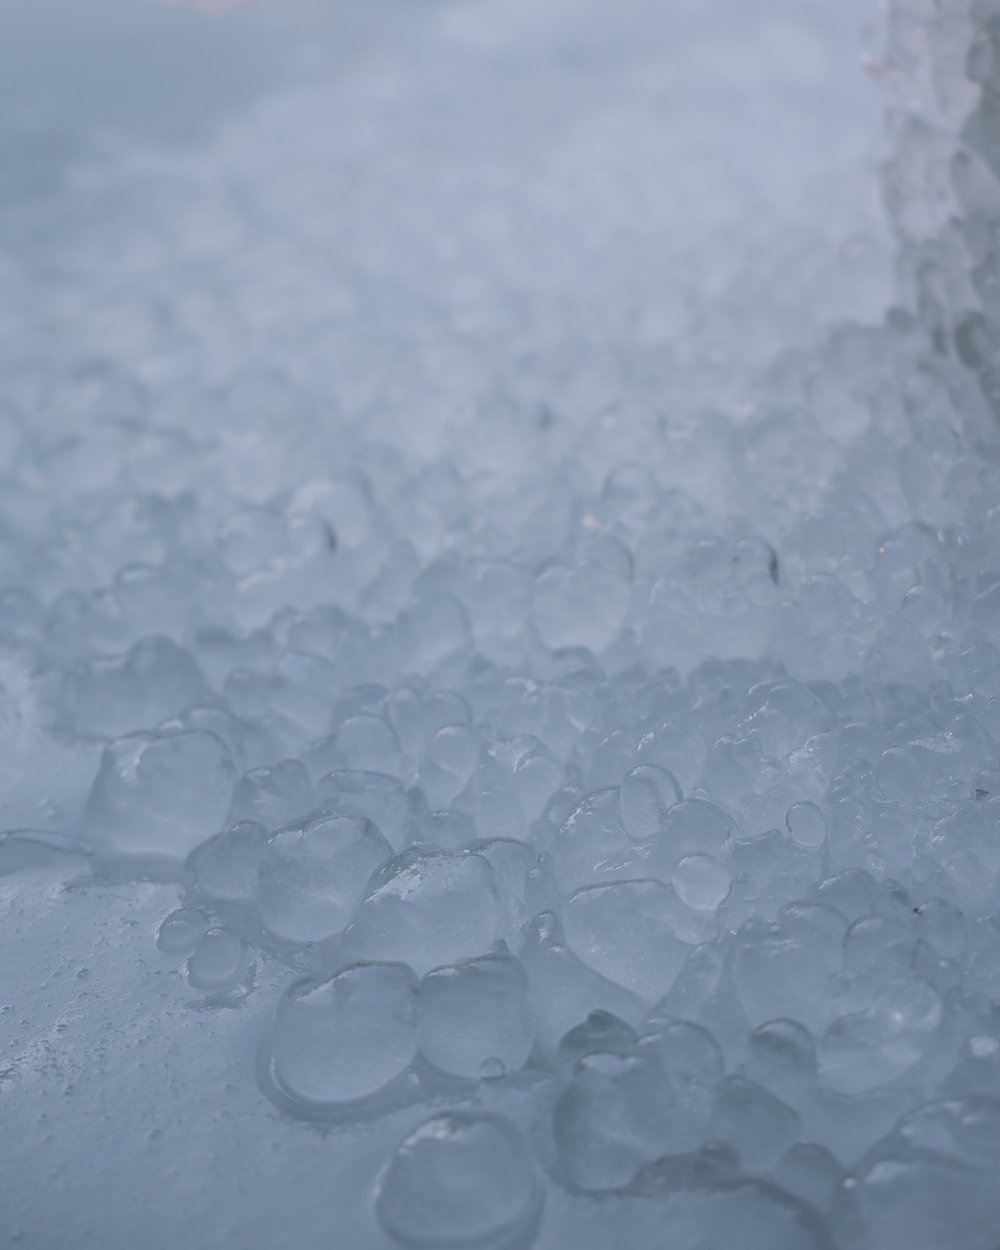 Little ice balls made from the recent heat - Gorges de la Rivière Sainte-Anne - Portneuf - Quebec - Canada